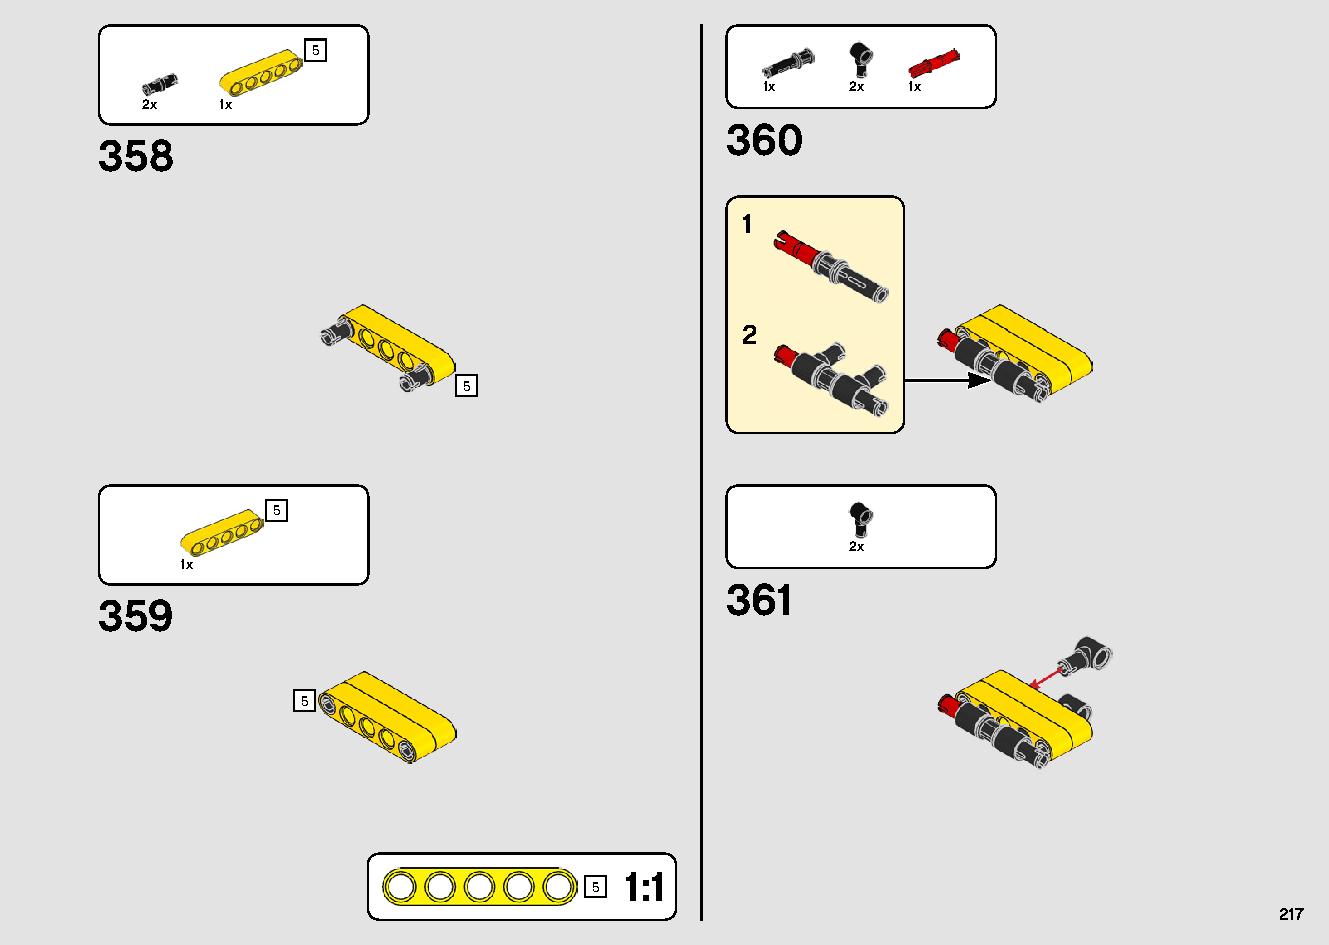 移動式クレーン車 42108 レゴの商品情報 レゴの説明書・組立方法 217 page